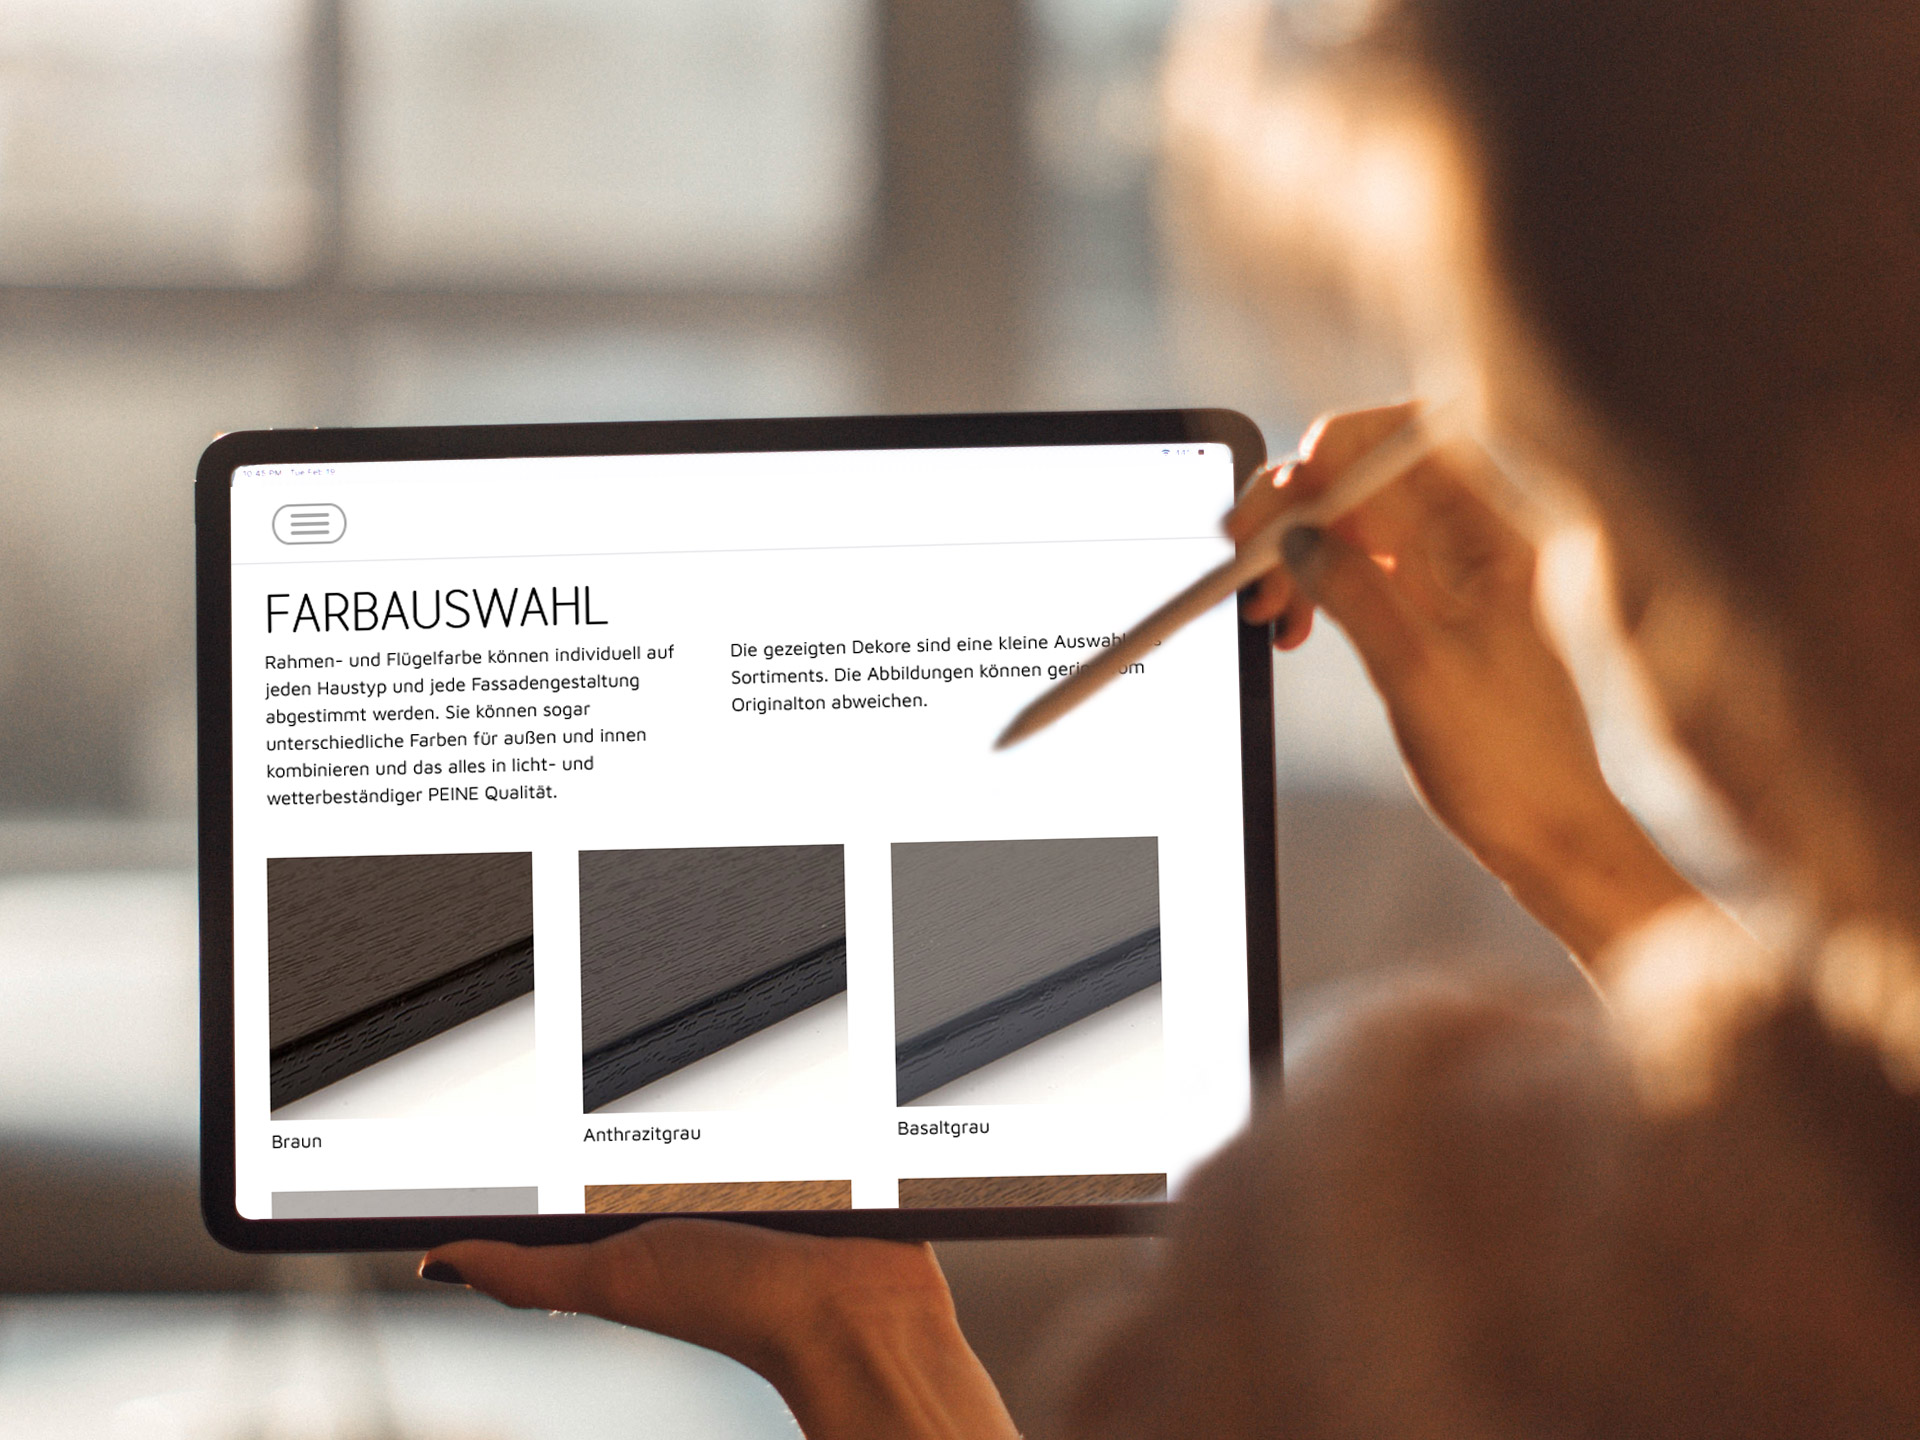 Frau zeigt mit Tablet-Stift auf Tablet in ihrer Hand mit Webseite Fensterbau